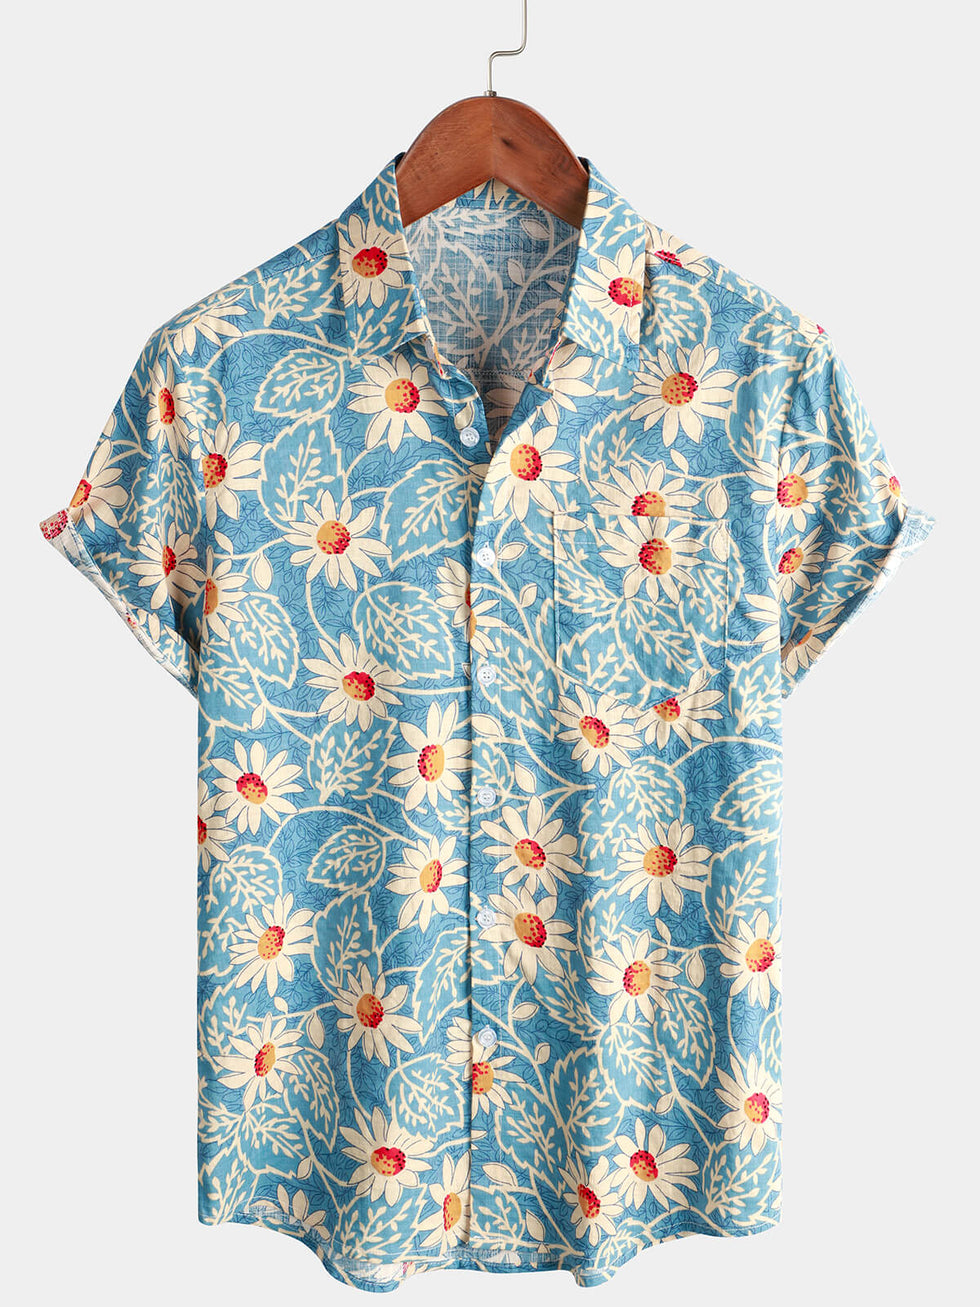 Men's Bamboo Floral VIntage Summer Hawaiian Rayon Holiday Button Up Sh ...